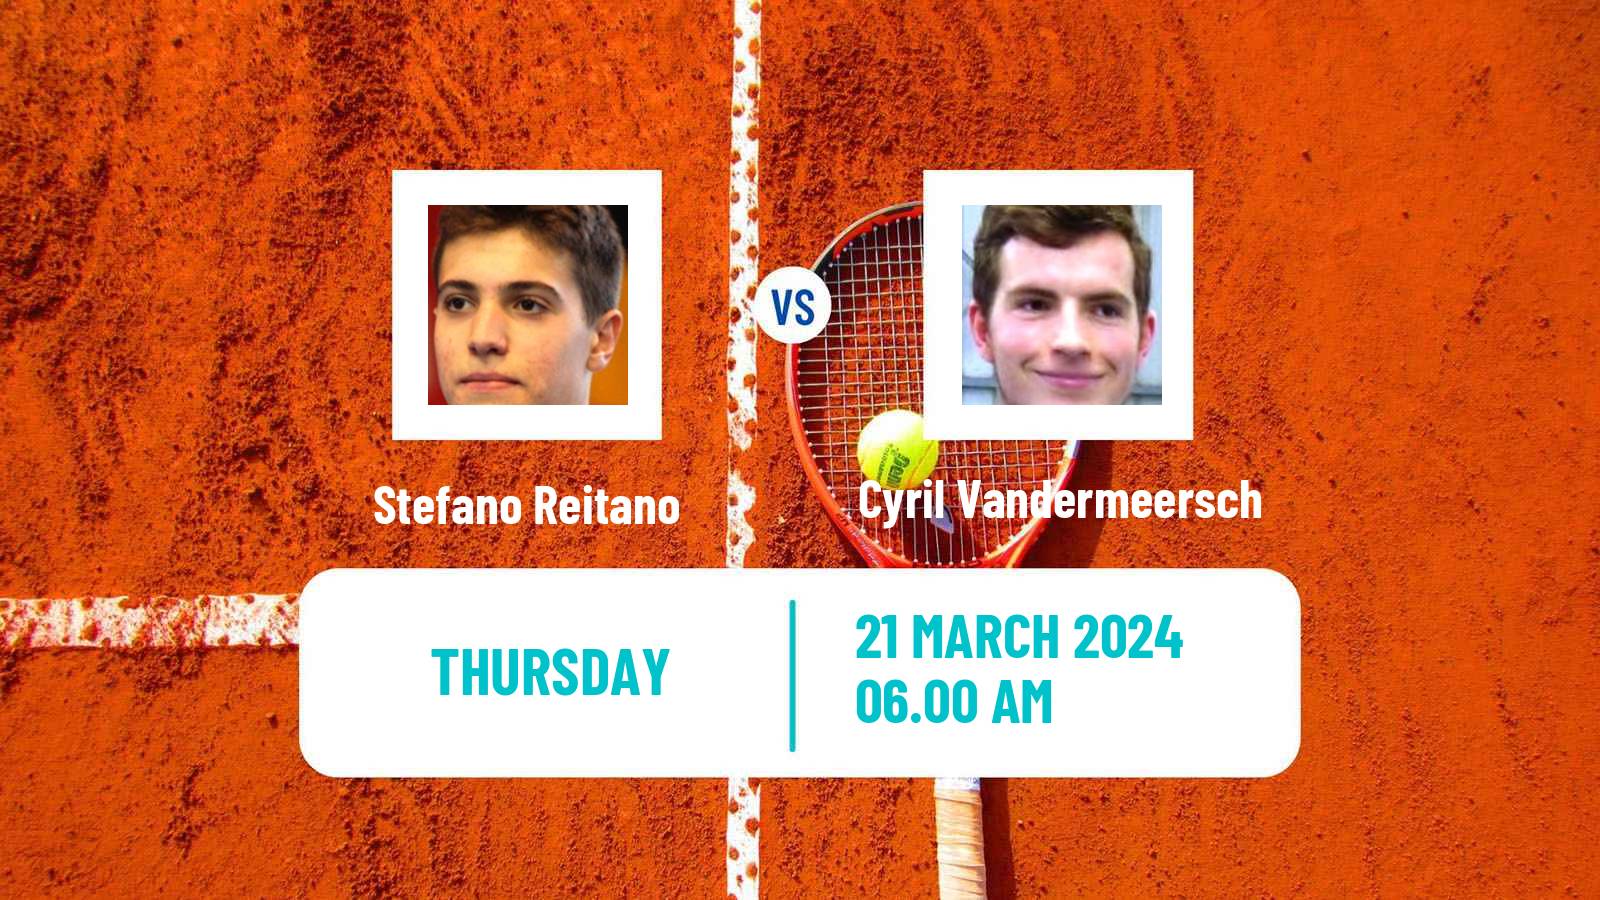 Tennis ITF M15 Monastir 12 Men Stefano Reitano - Cyril Vandermeersch